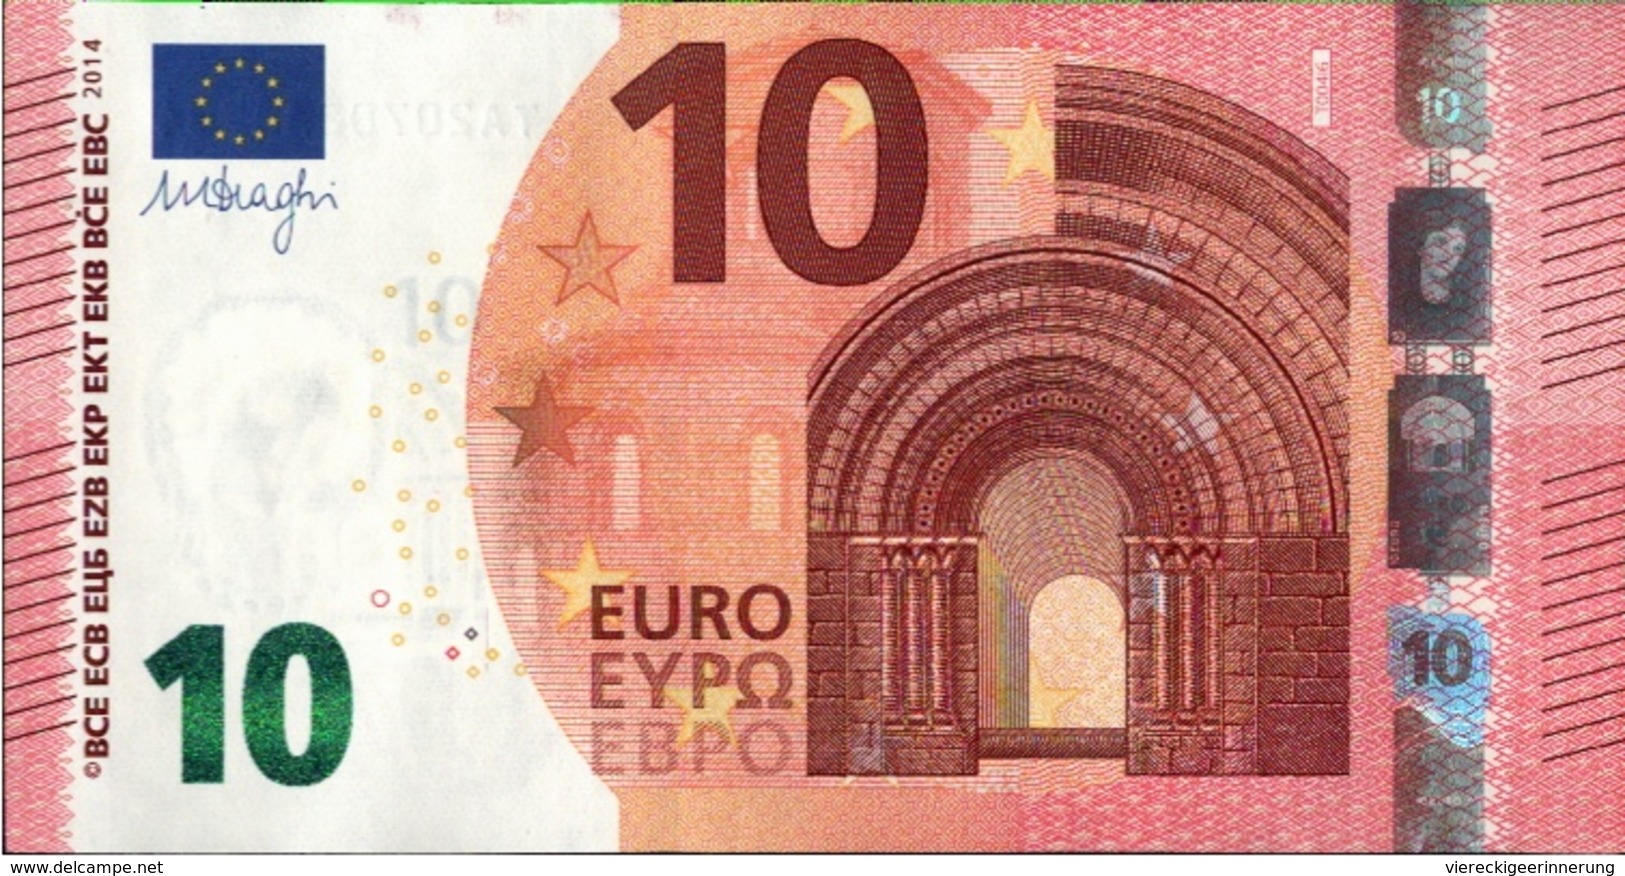 ! 10 Euro, T004I6, Money, Geldschein, Banknote TA2070858784, Mario Draghi, EZB, ECB, Europäische Zentralbank - 10 Euro